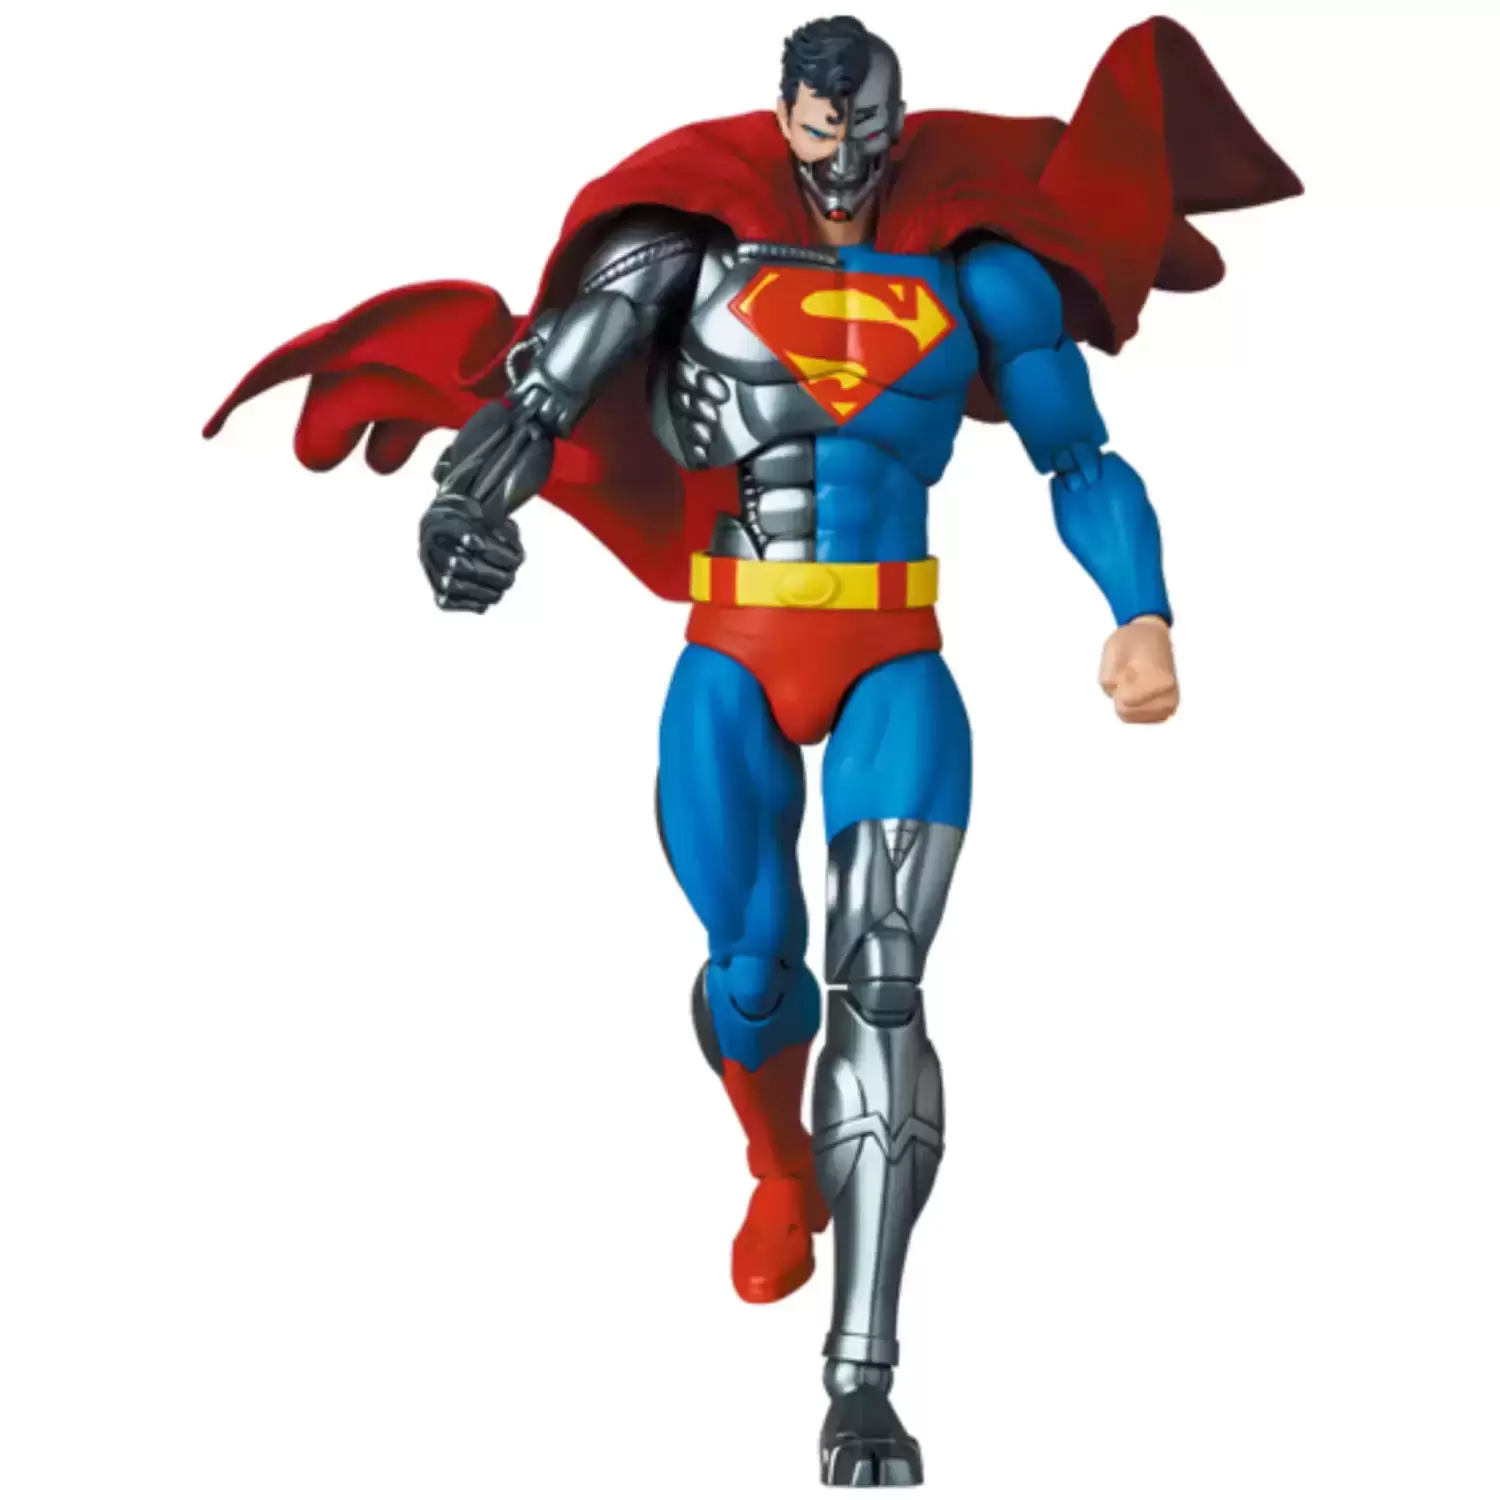 MAFEX (Medicom Toy) - Return Of Superman - Cyborg Superman